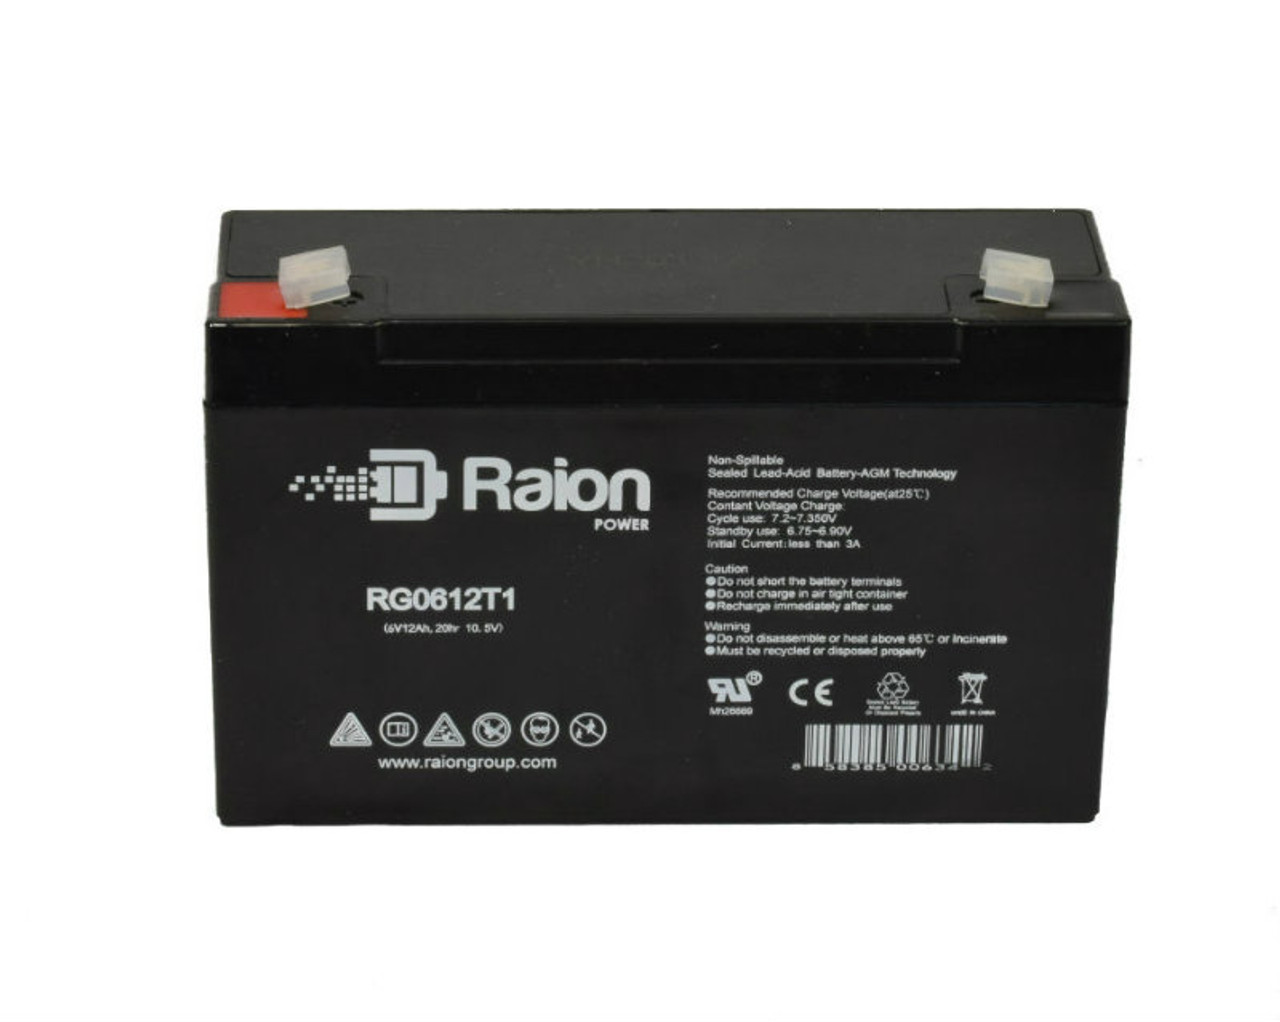 Raion Power RG06120T1 SLA Battery for Teledyne H2RQ12S7